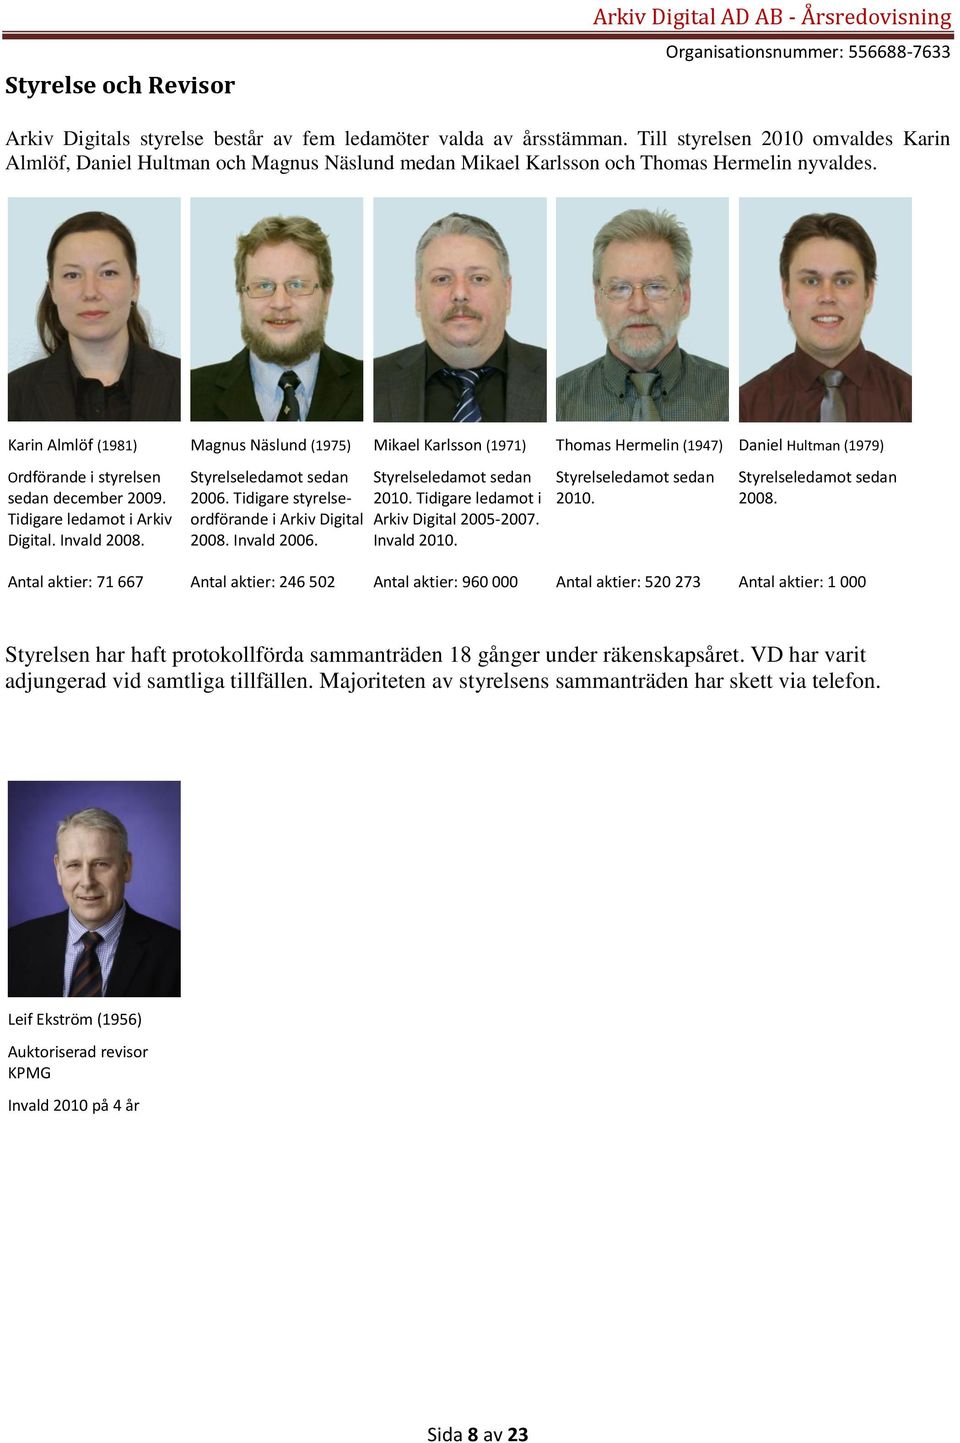 Tidigare ledamot i Arkiv Digital. Invald 2008. Magnus Näslund (1975) Styrelseledamot sedan 2006. Tidigare styrelseordförande i Arkiv Digital 2008. Invald 2006.